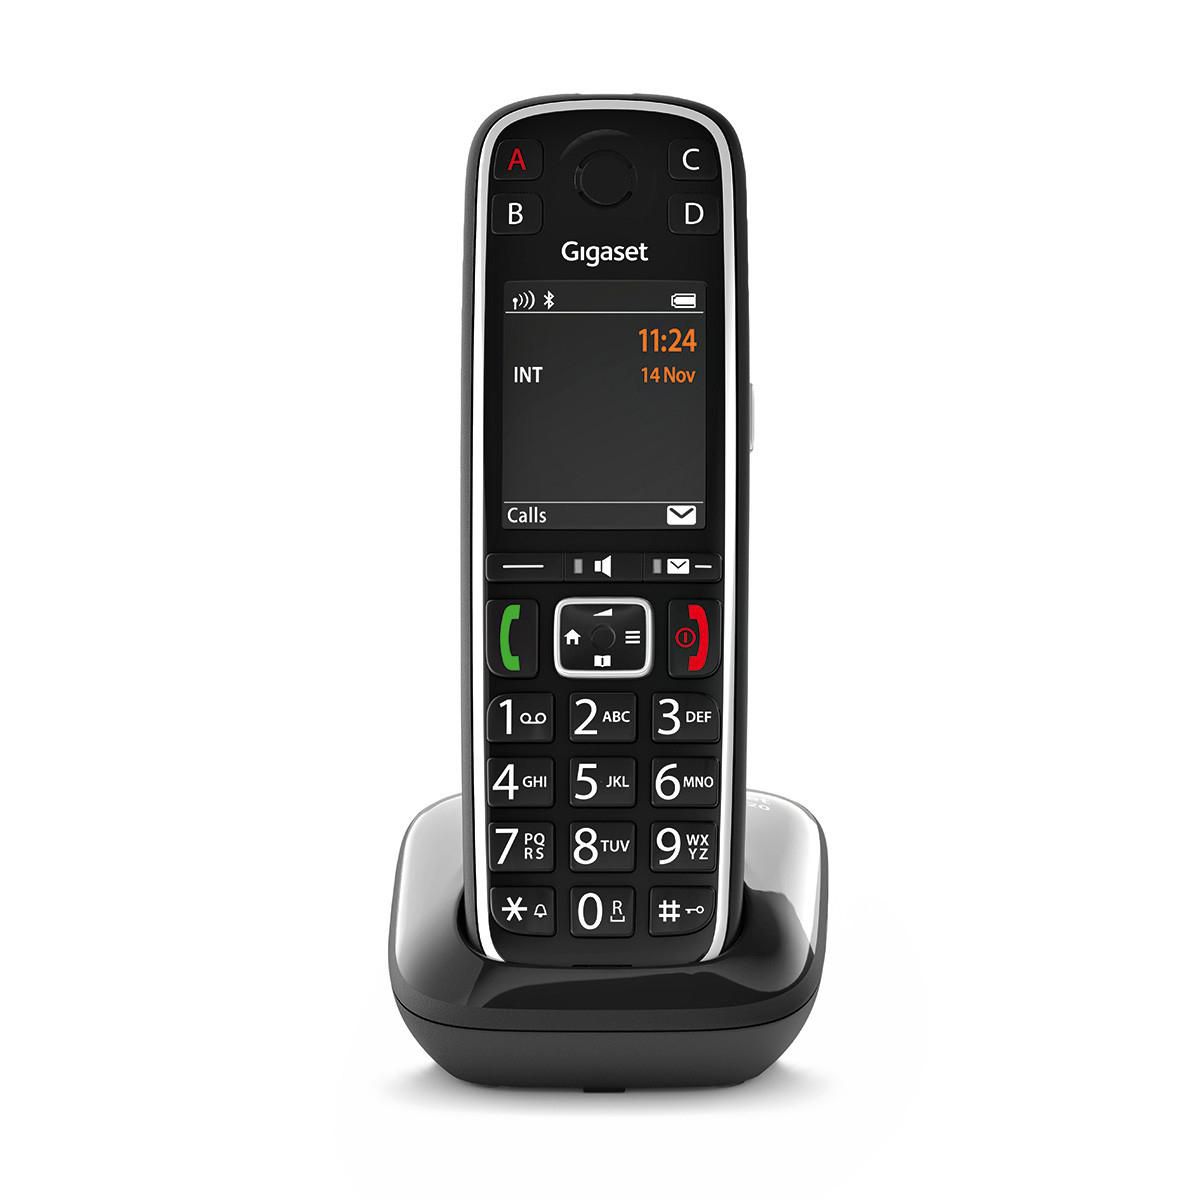 Gigaset S30852-H2903-B101 W128270111 E720 AnalogDect Telephone 